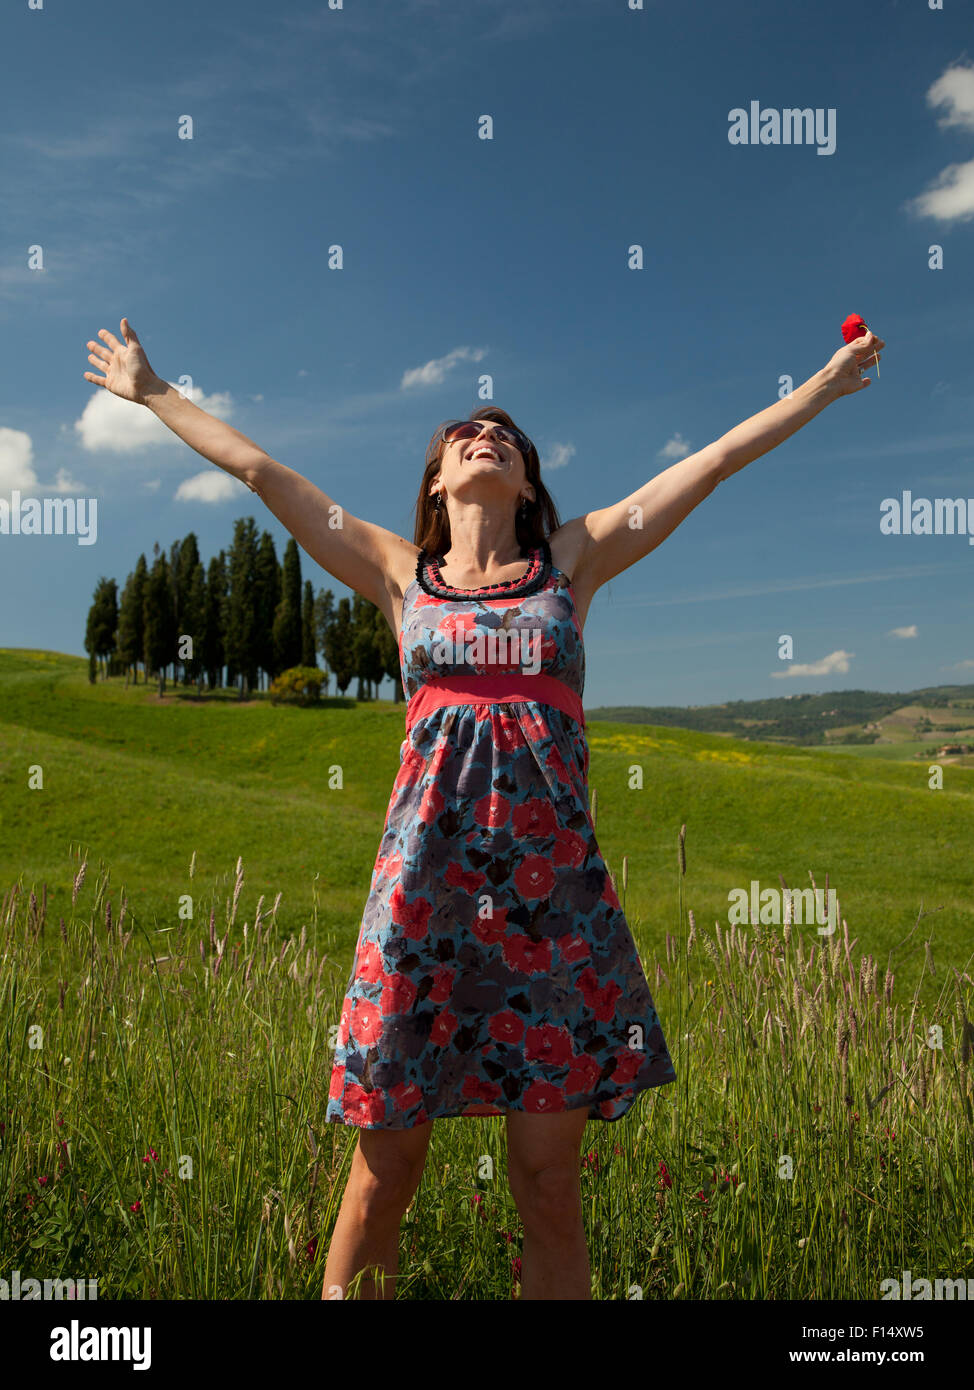 L'Italia, Toscana, donna in piedi sul prato Foto Stock